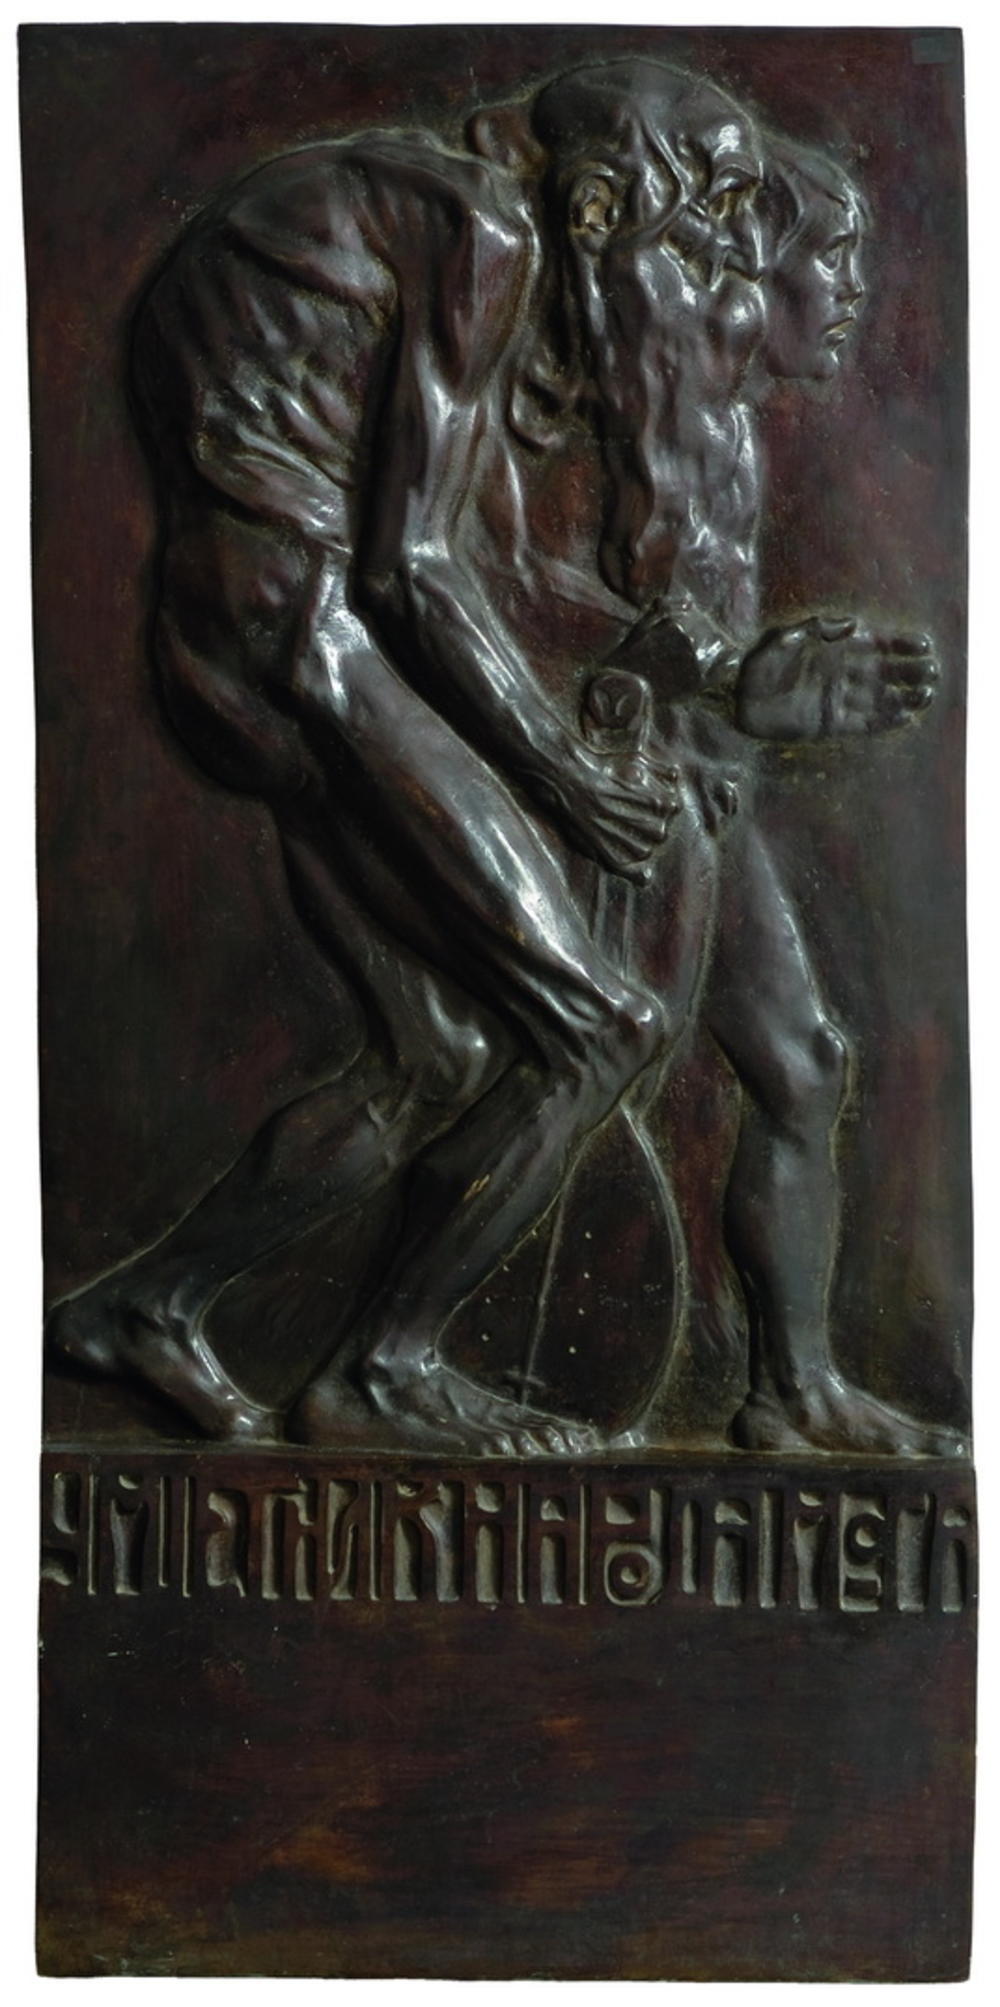 Umjetnik naroda moga, 1905, reljef u bronzi odliven 1973.